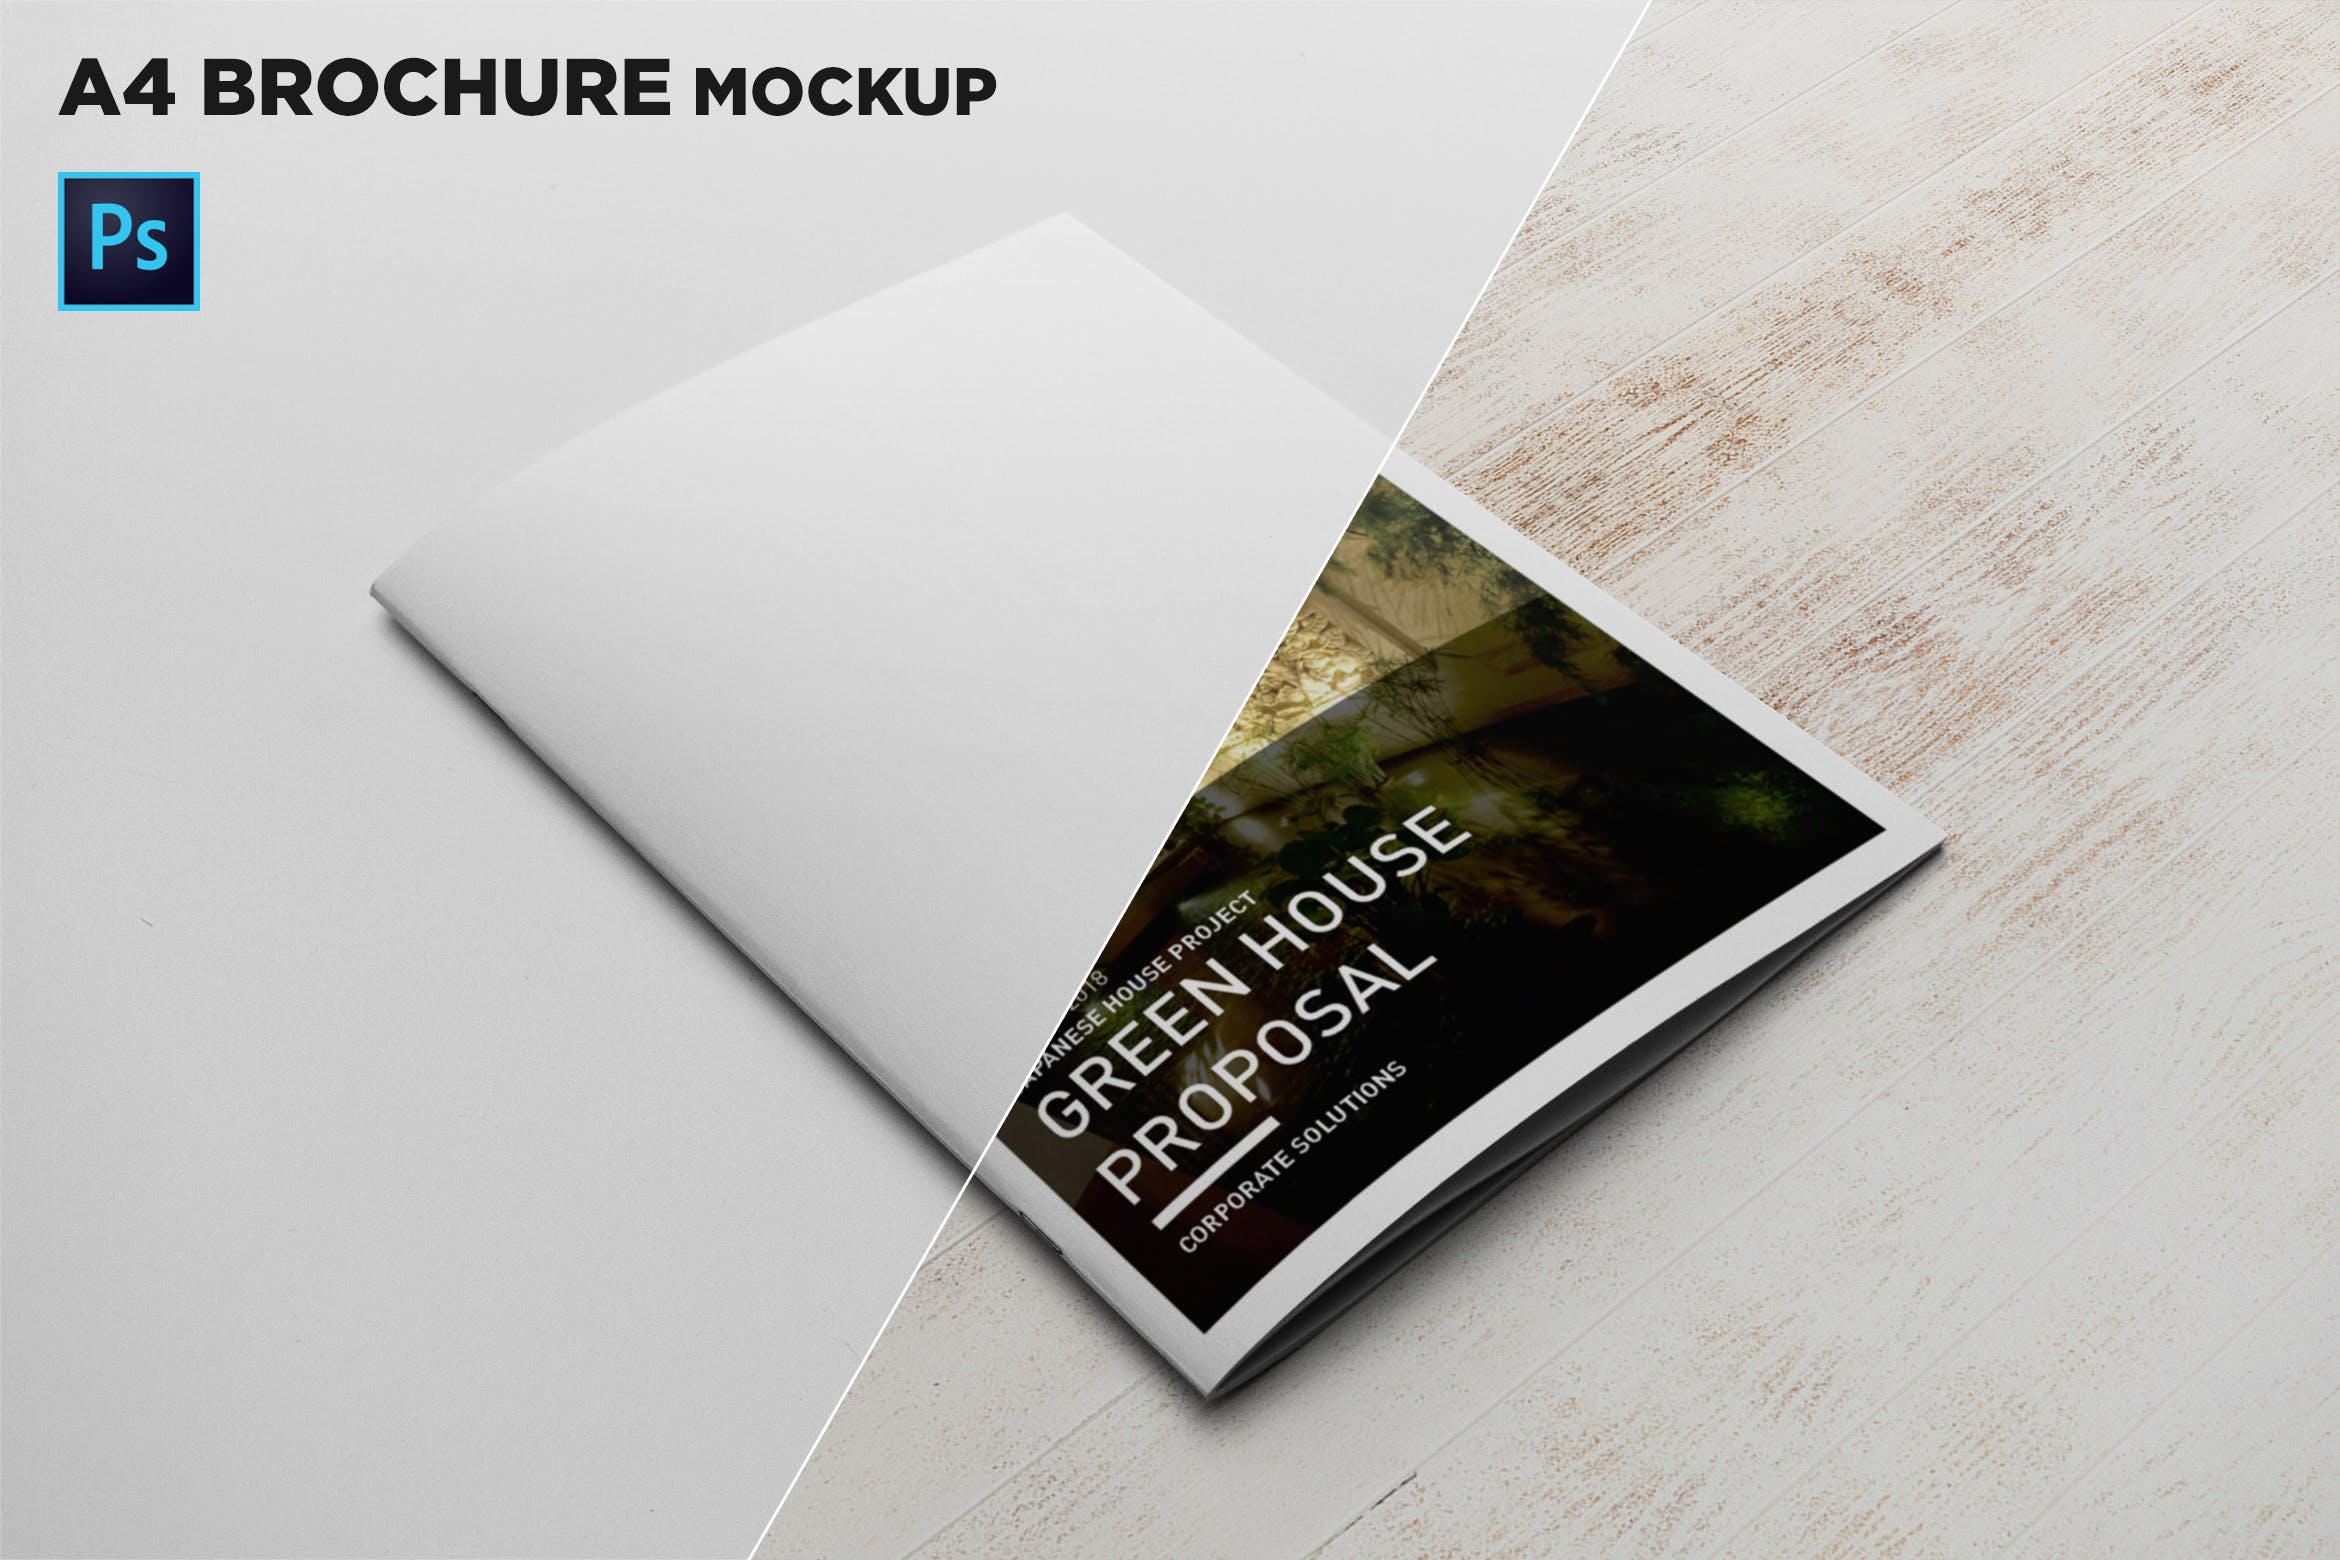 A4宣传小册子/企业画册封面设计45度角视图样机蚂蚁素材精选 A4 Brochure Cover Mockup插图